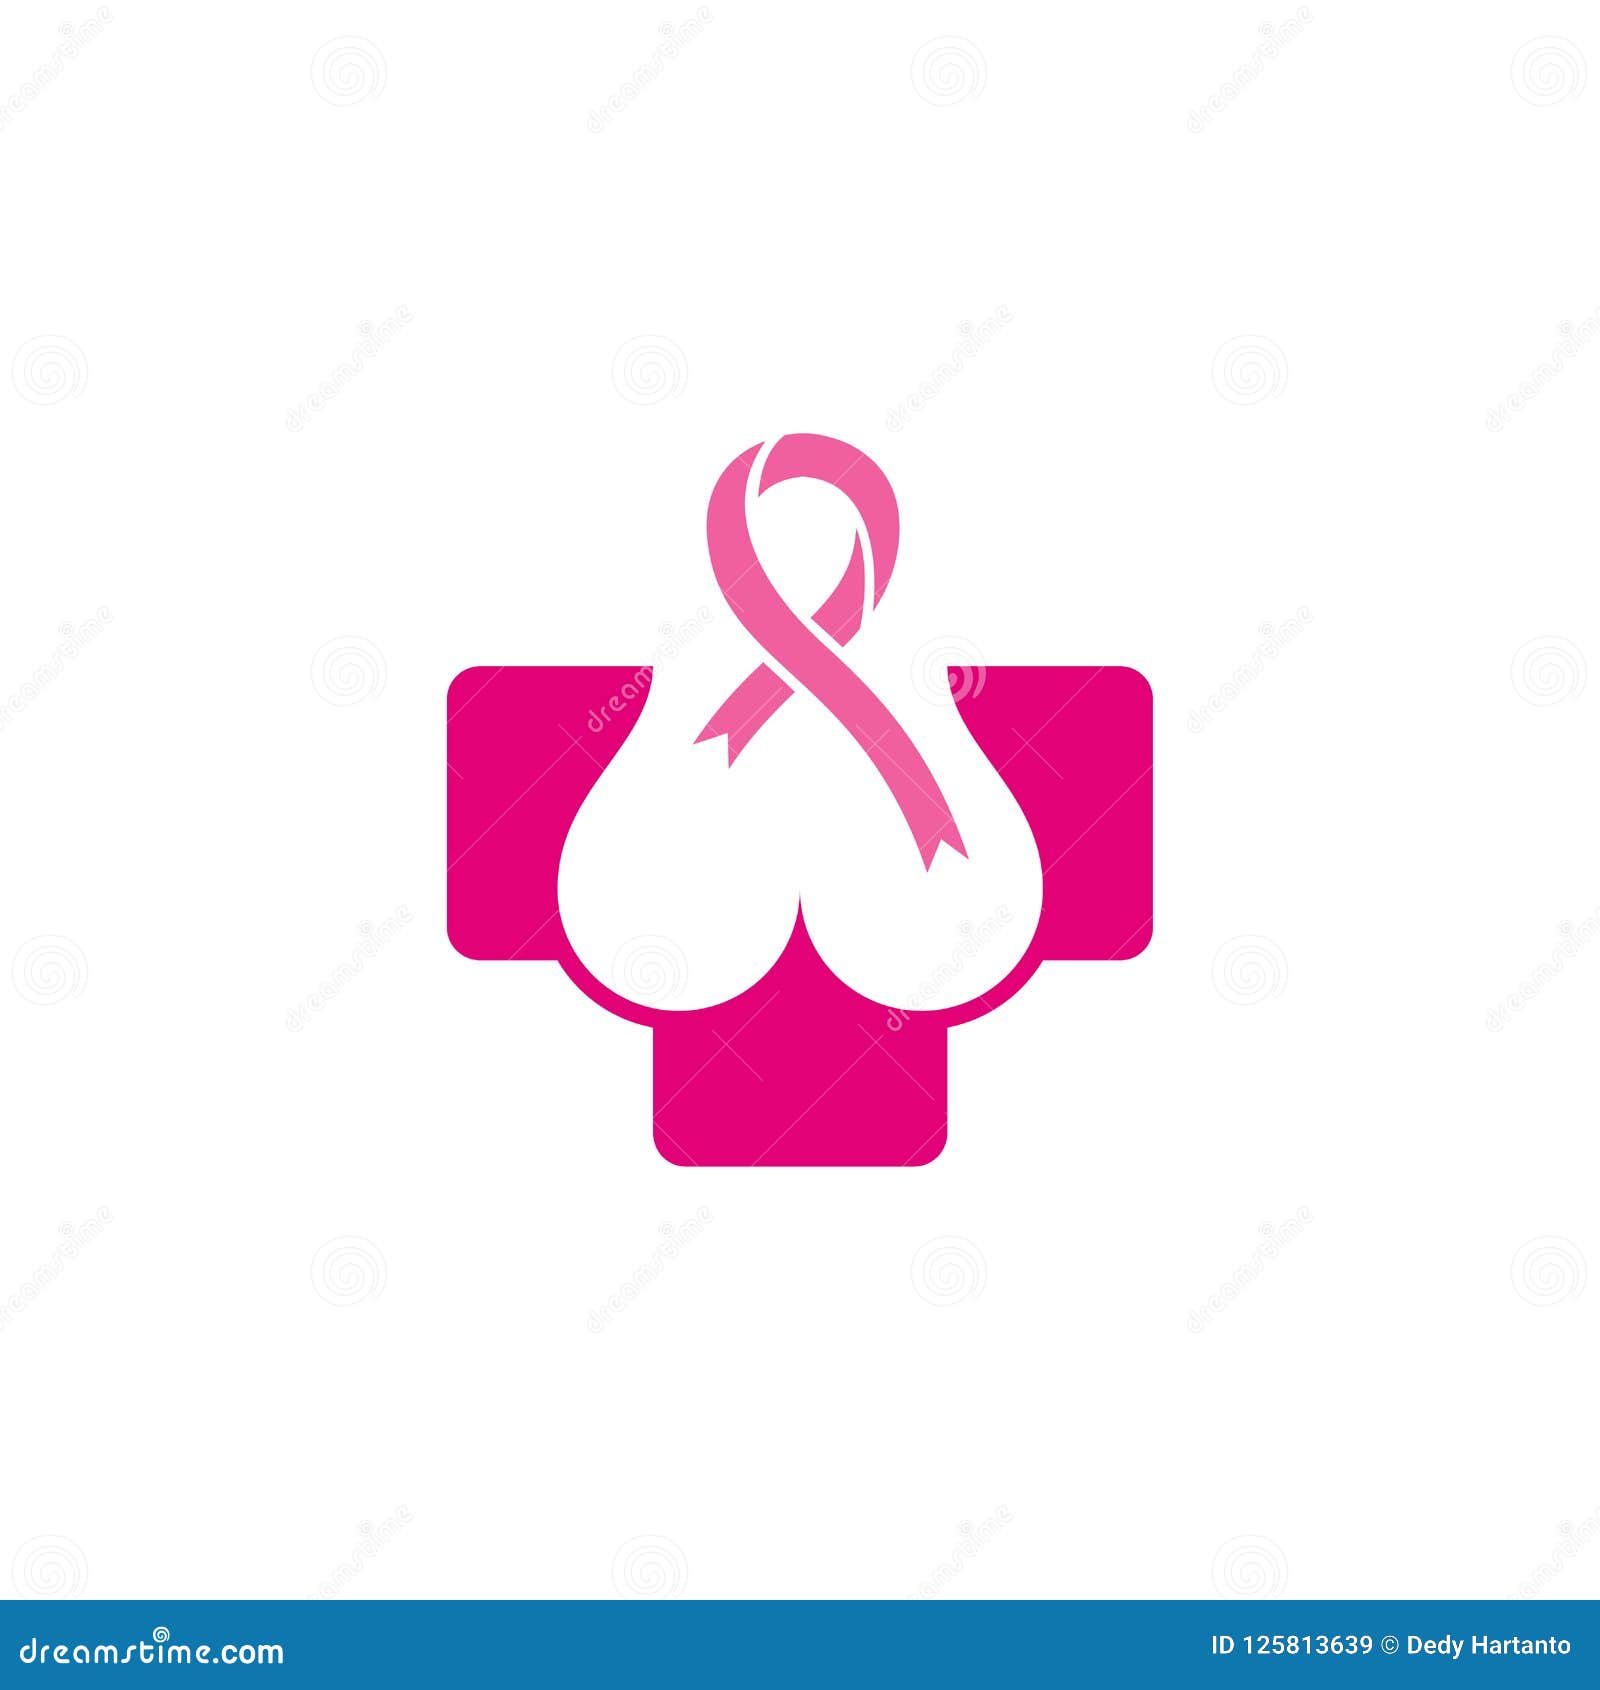 breast cancer logo ideas 3